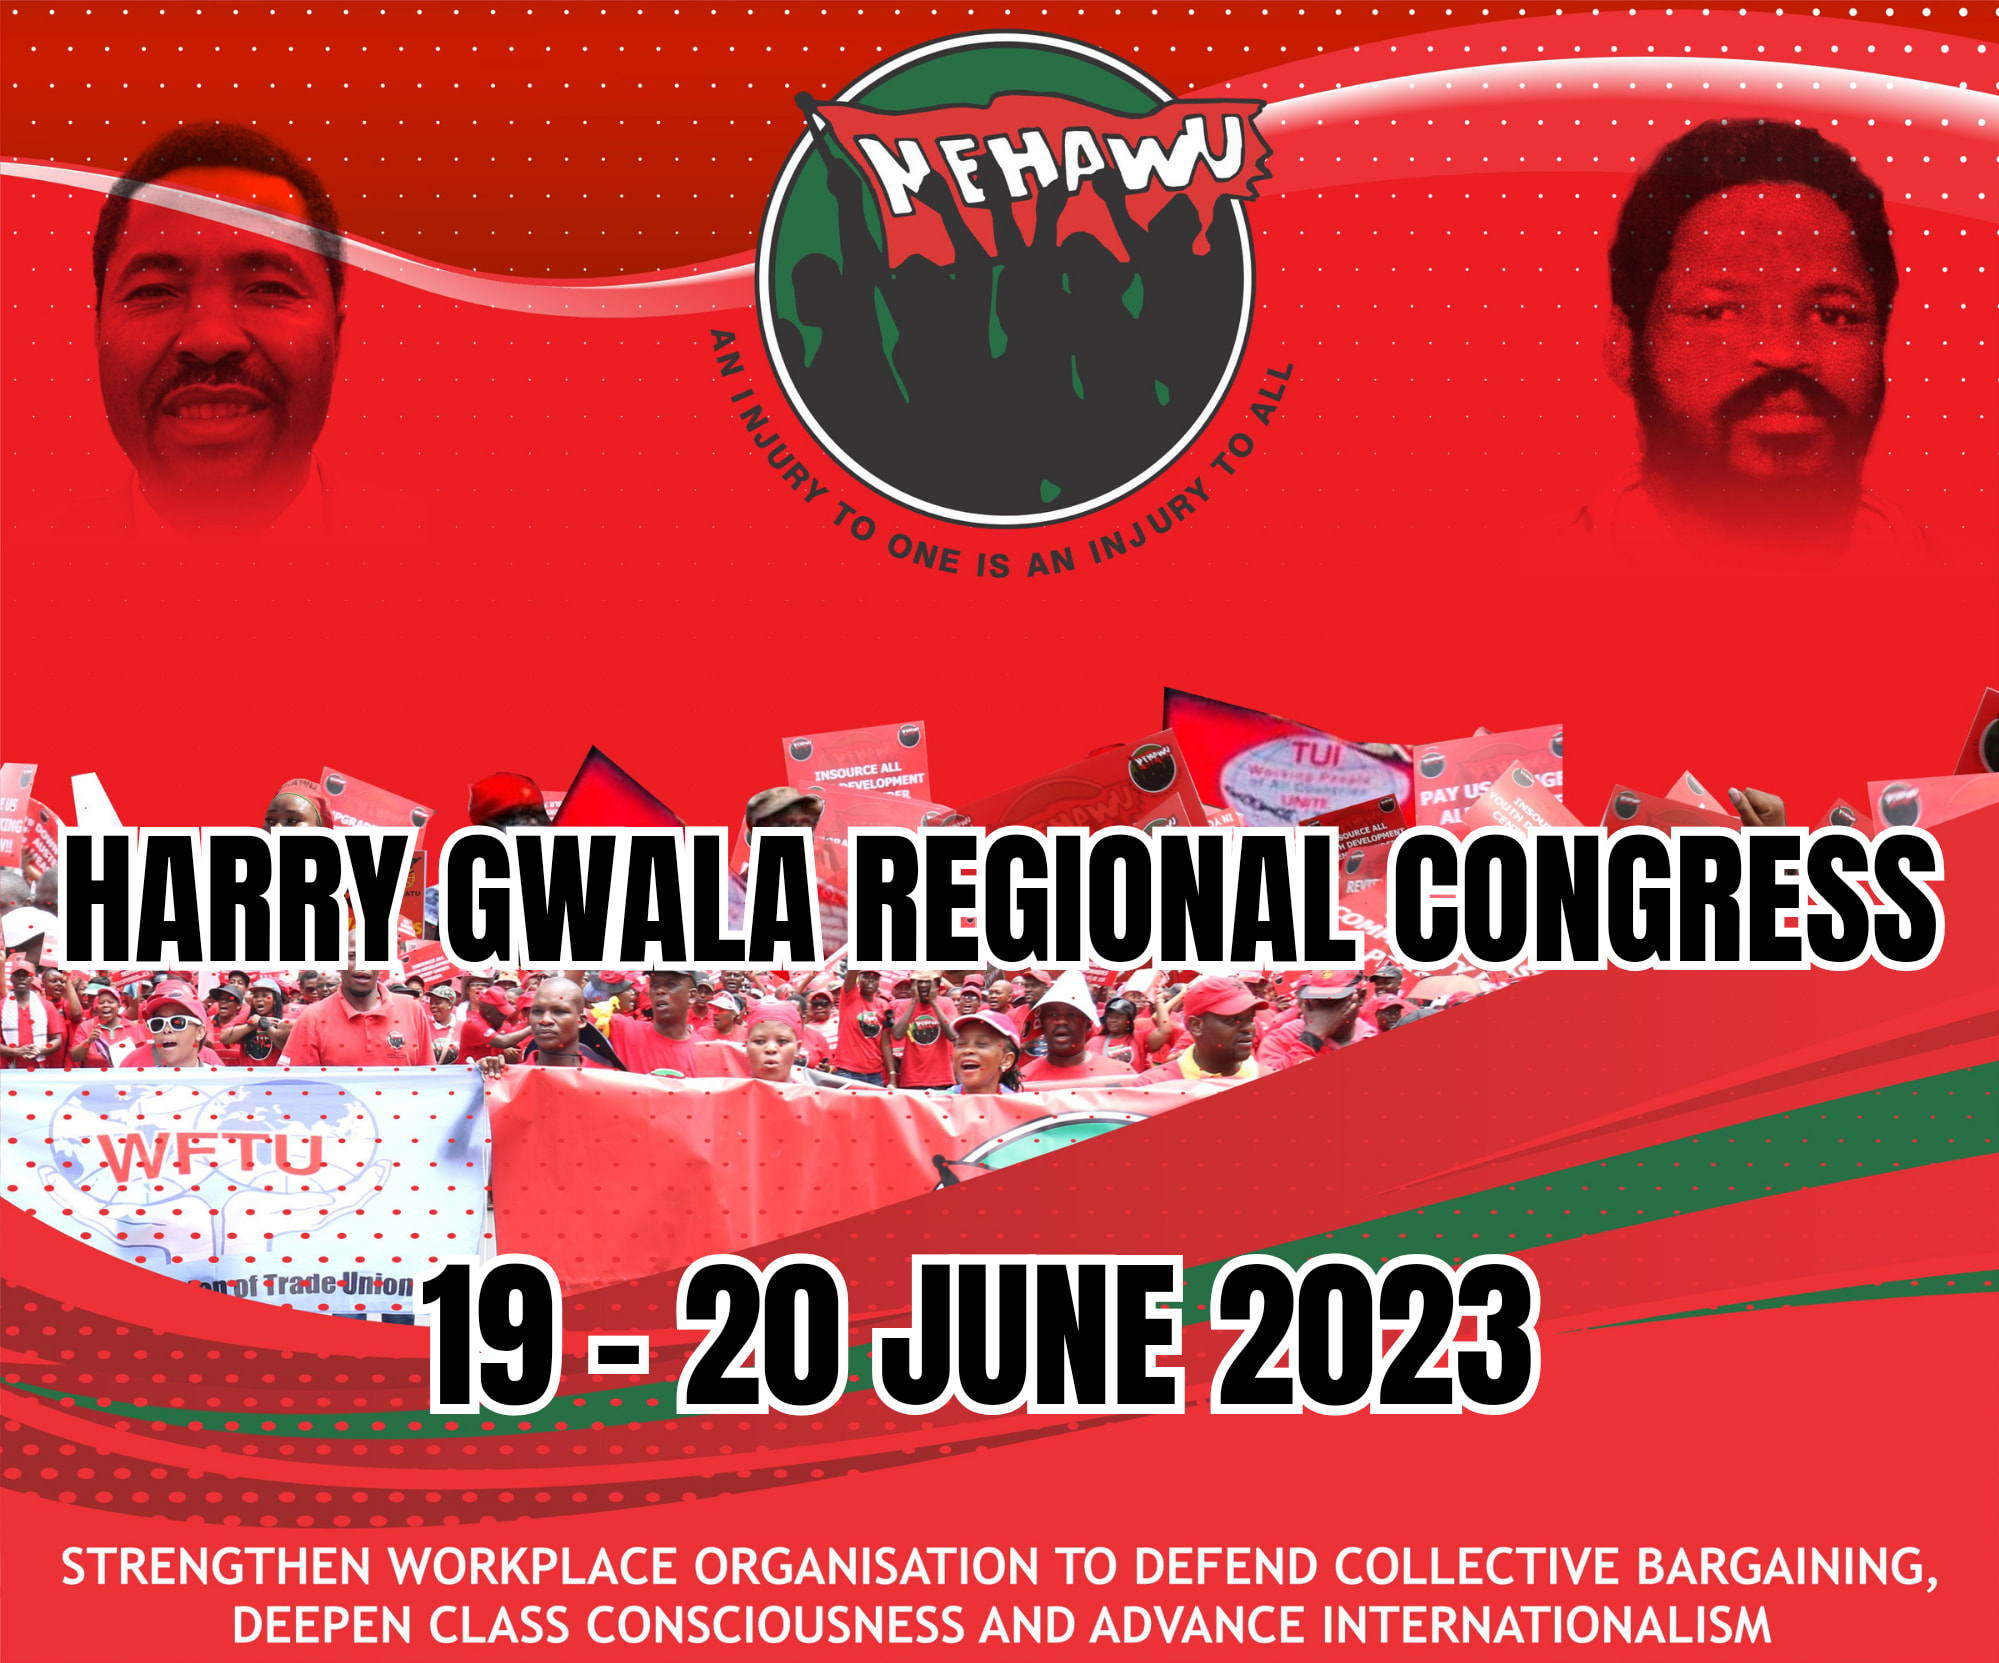 Harry Gwala Regional Congress -19-20 June